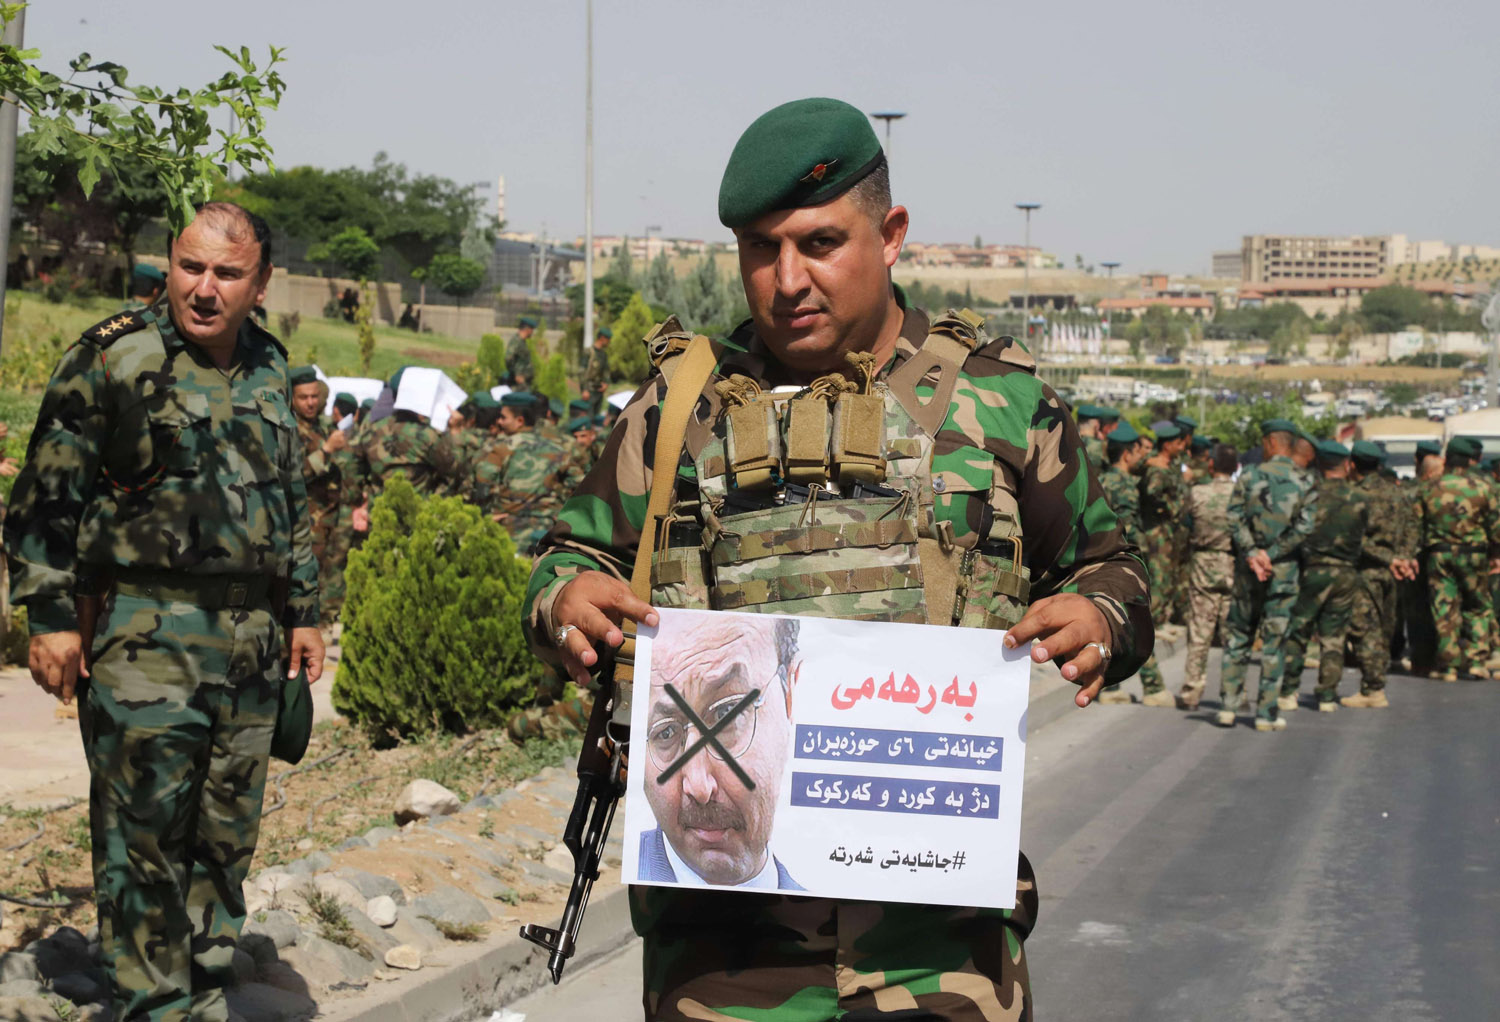 مقاتل من البيشمركه يحمل ملصقا يهاجم فيه رئيس وزراء كردستان السابق برهم صالح